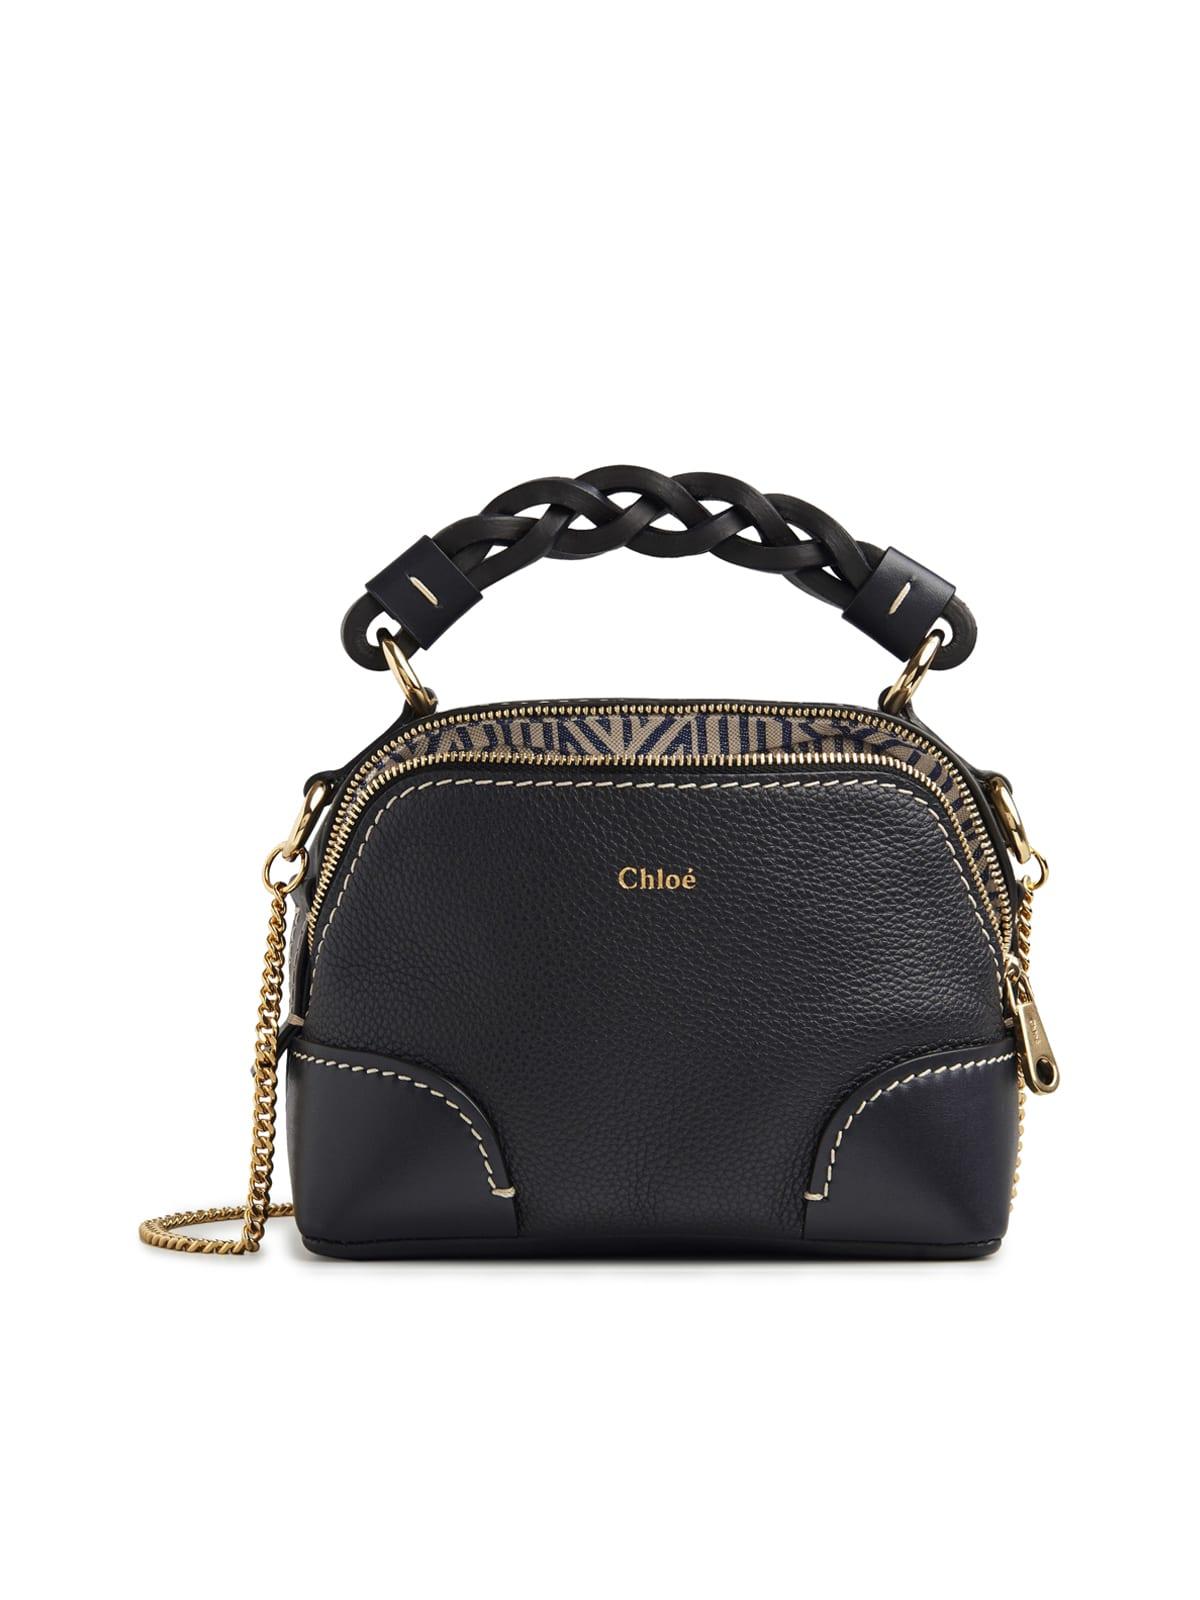 Chloé Bag With Chain Top Sellers | website.jkuat.ac.ke